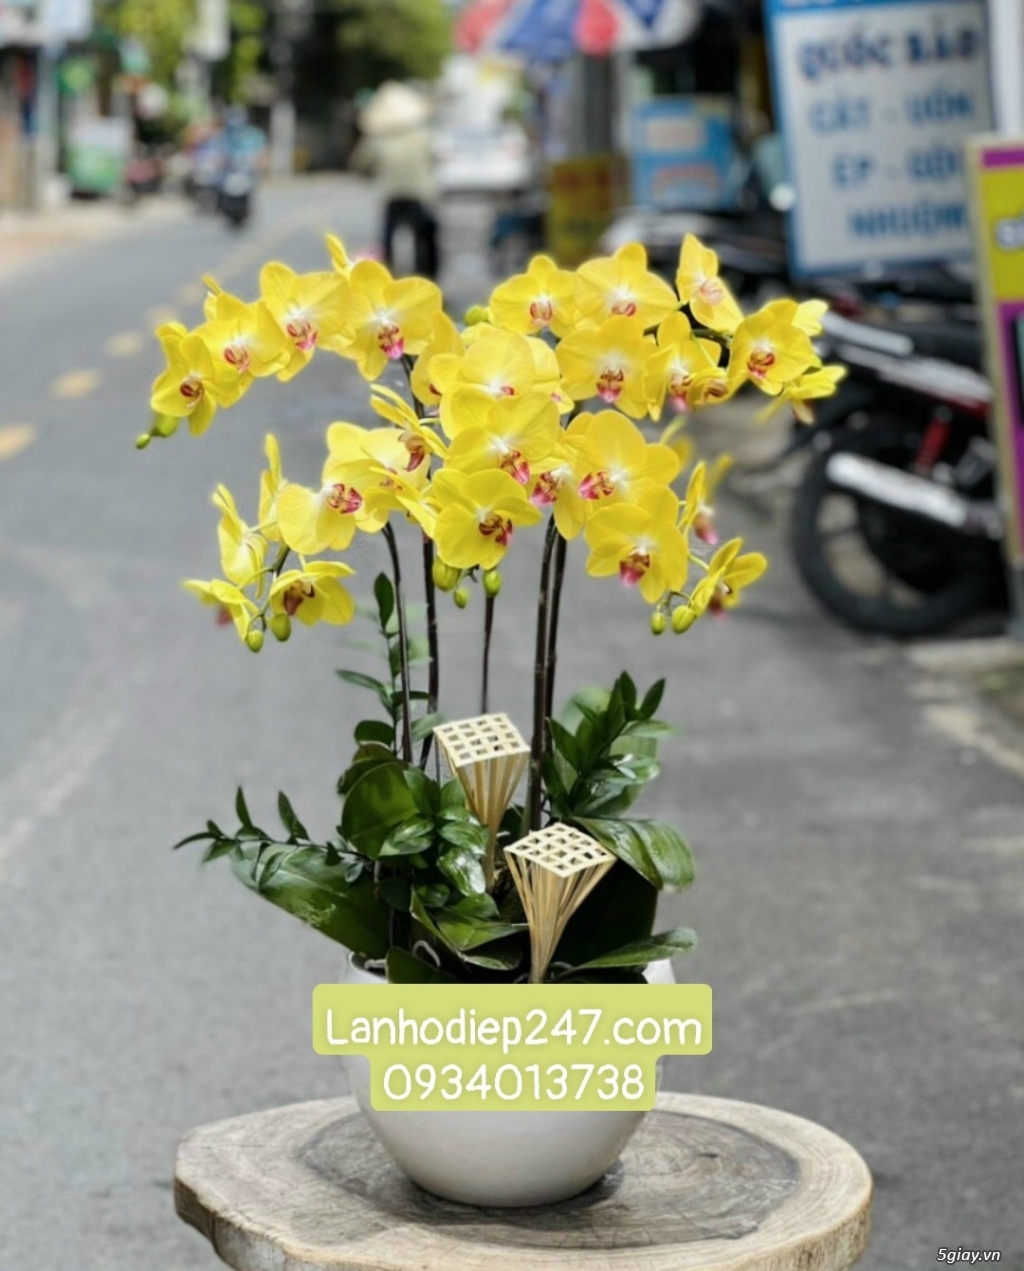 Shop hoa tươi Lan Hồ Điệp 247 tại Phú Nhuận 0934013738 - 13